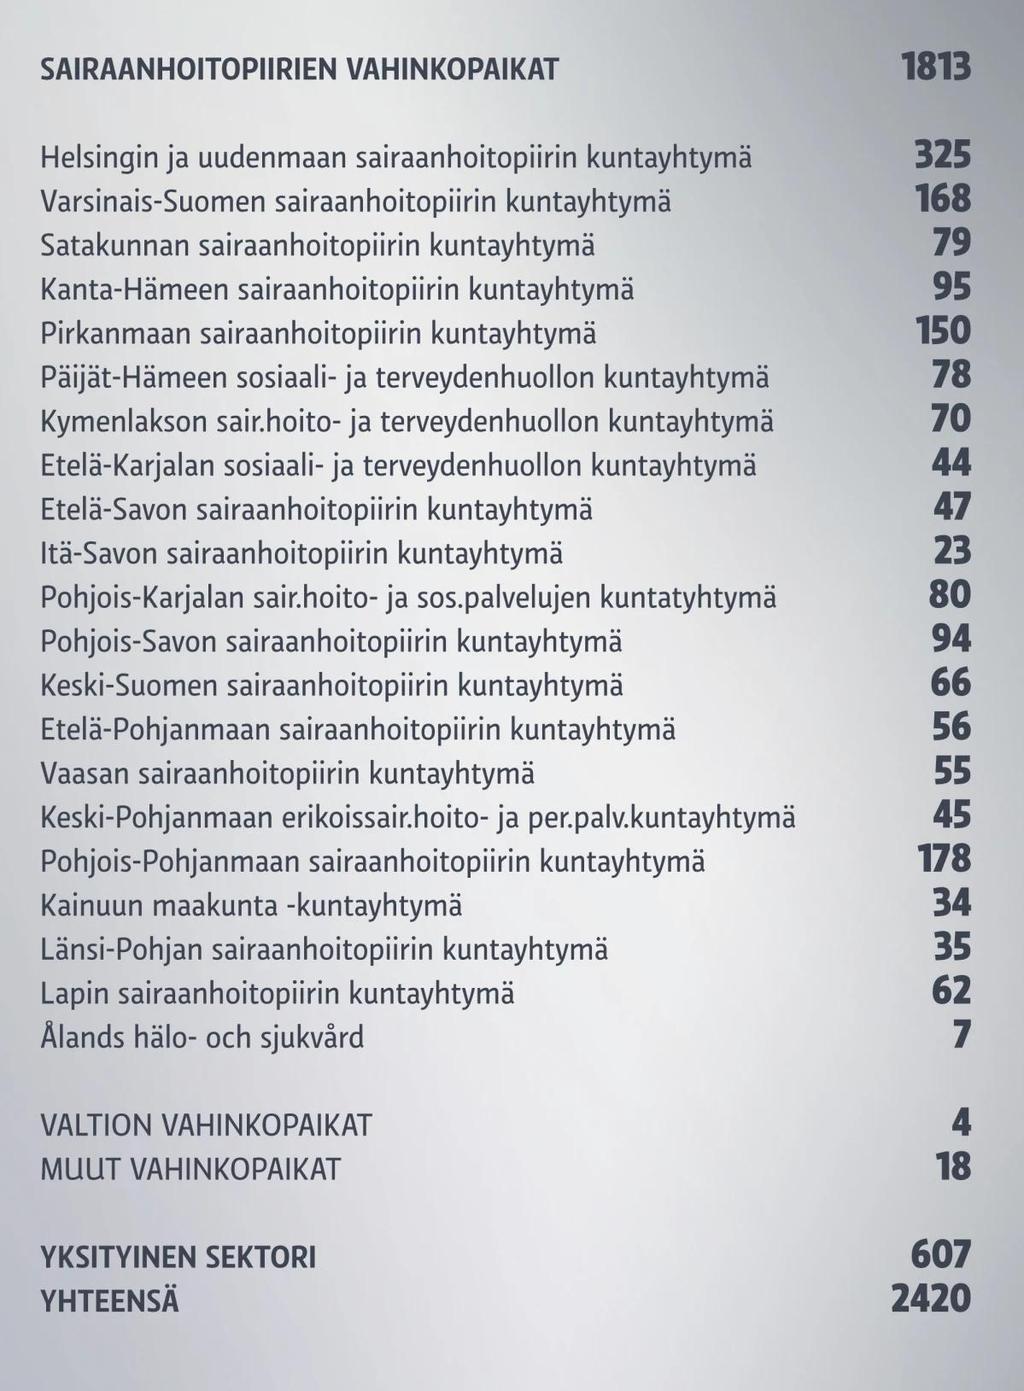 Seuraavaksi eniten potilasvahinkoja korvattiin tässä järjestyksessä: Helsingin ja Uudenmaan sairaanhoitopiirissä HUS:issa, Pohjois-Pohjanmaalla, Varsinais-Suomessa ja Pirkanmaalla.